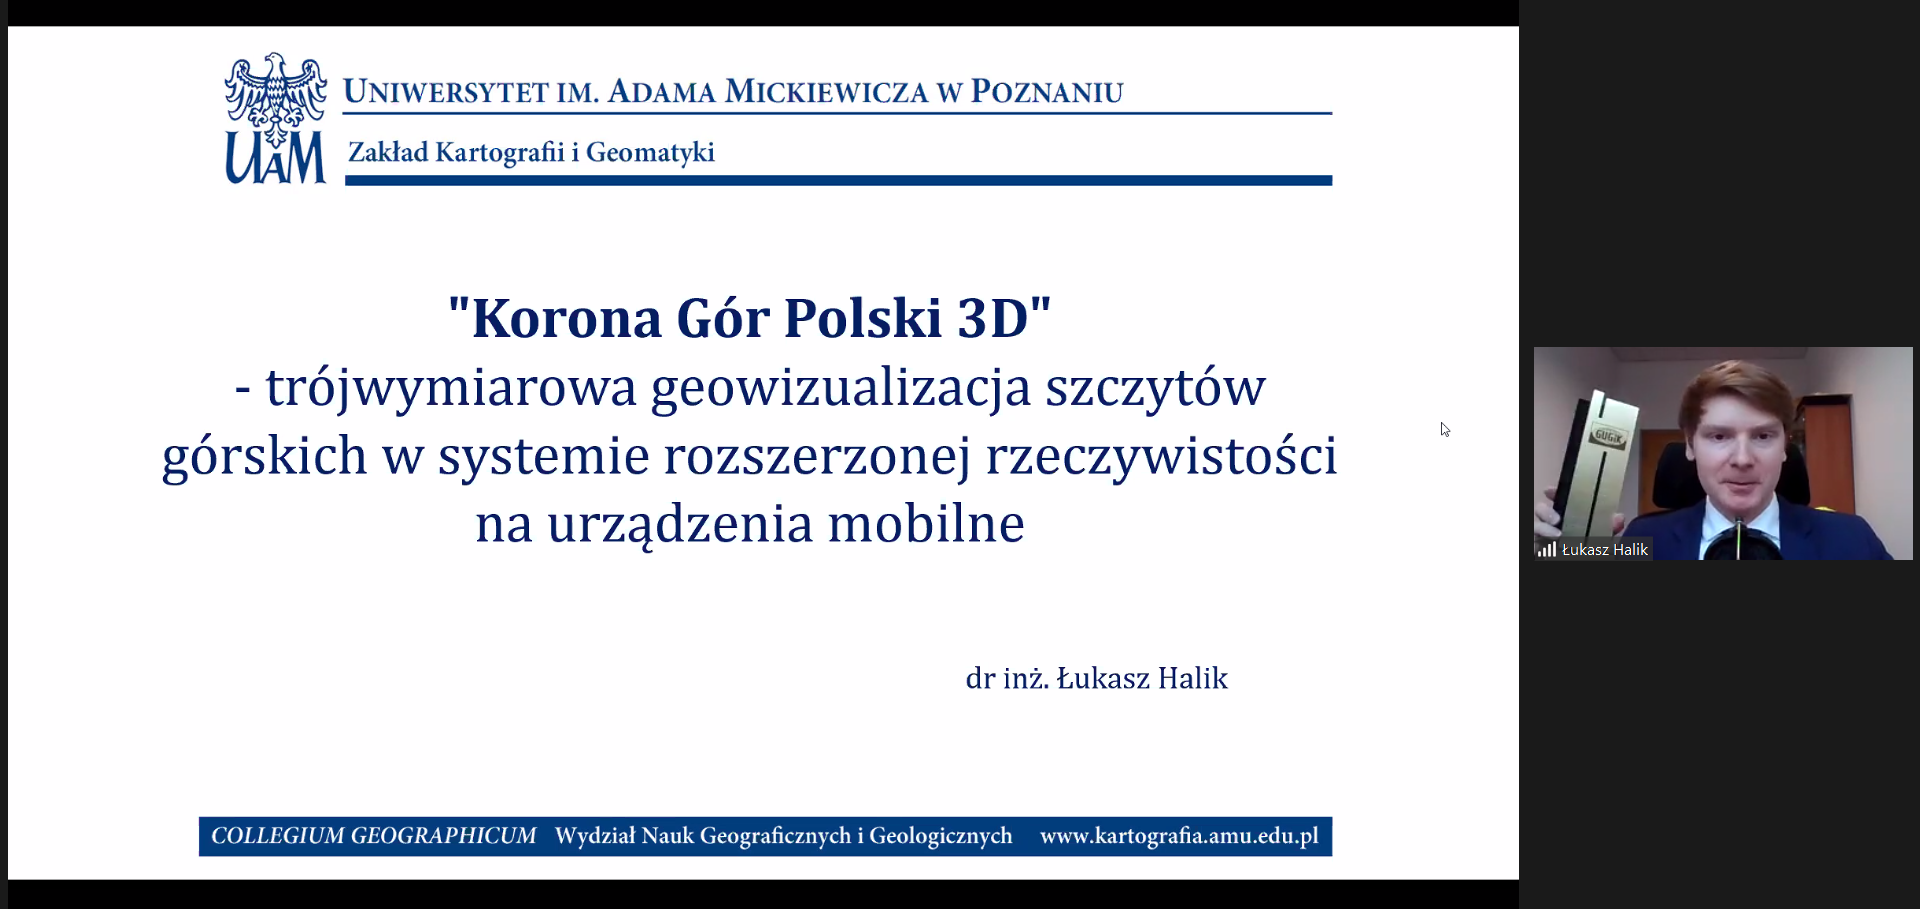 Zrzut ekranu z oprogramowania ZOOM. Po lewej slajd z prezentacji aplikacji "Korona Gór Polski 3D". Po prawej dr inż. Łukasz Halik ze statuetką wygraną w konkursie.